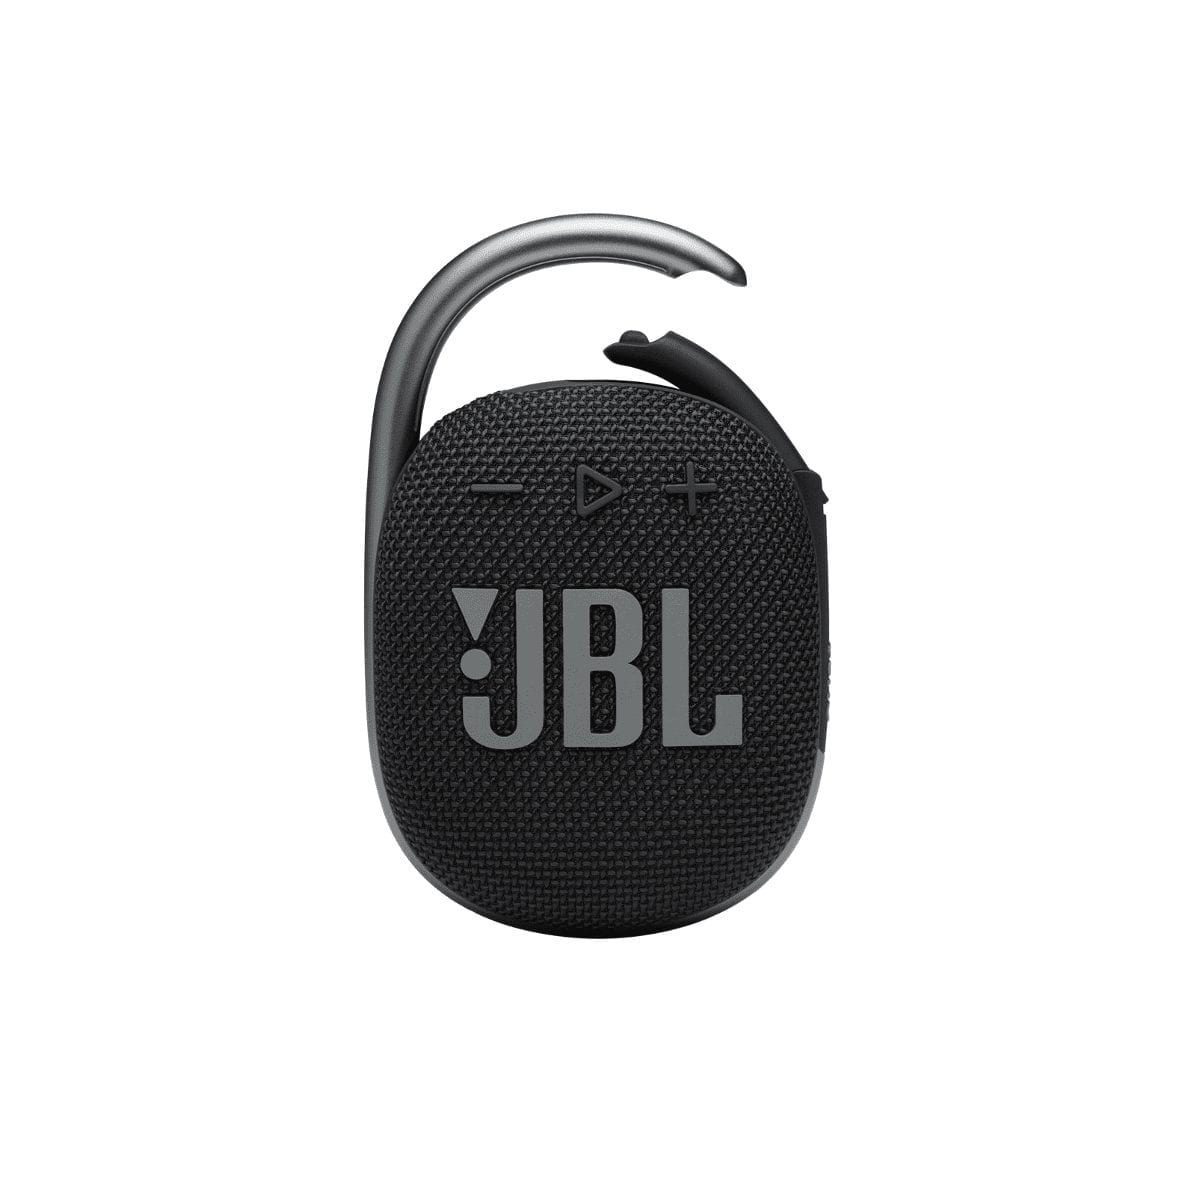 Компактные портативные колонки JBL Clip 4 Black компактные портативные колонки defunc mondo bt speaker large silver black